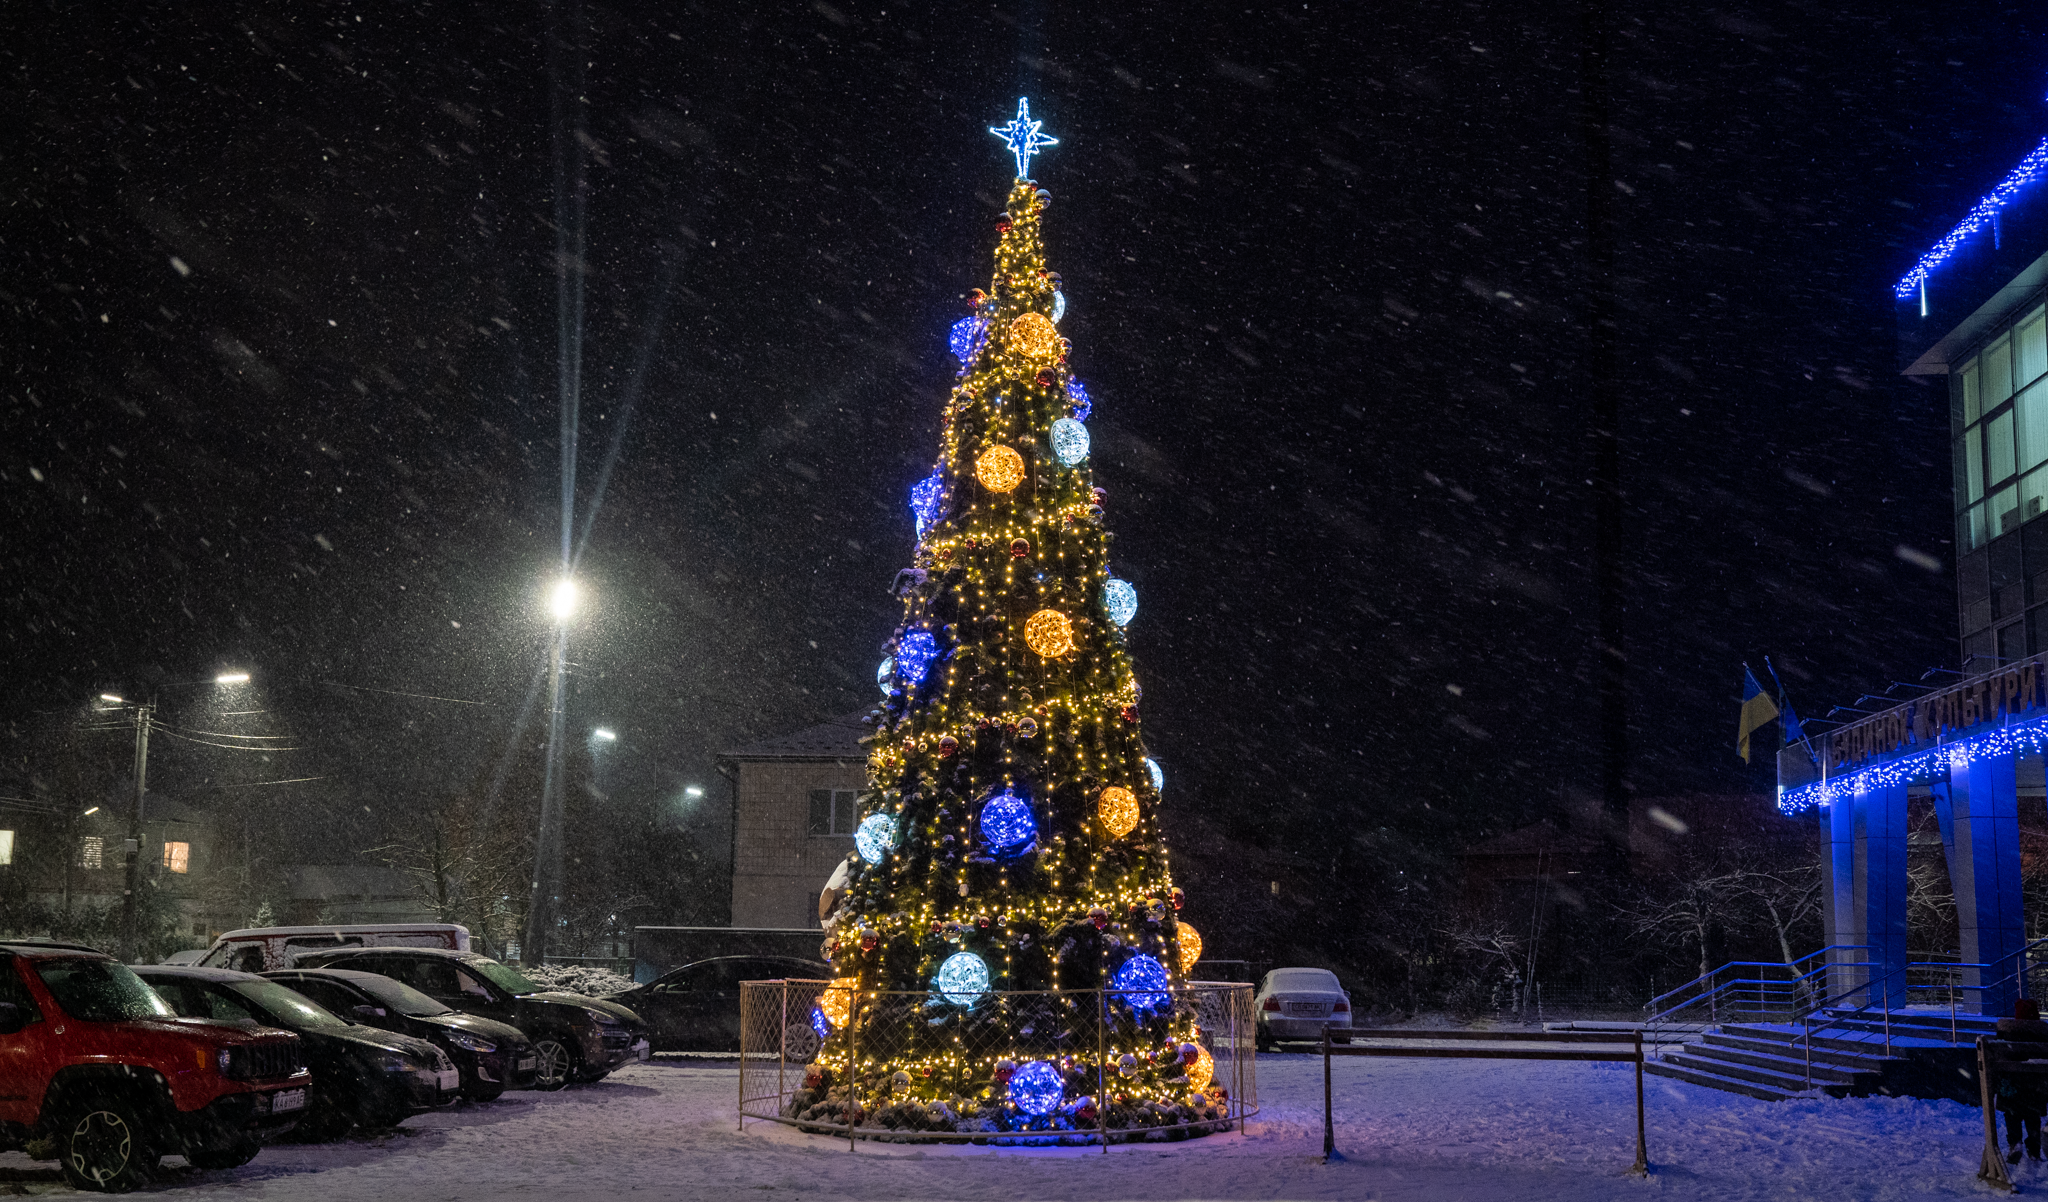 Kozin. Christmas tree — Lumiere | Light illumination | Ukraine